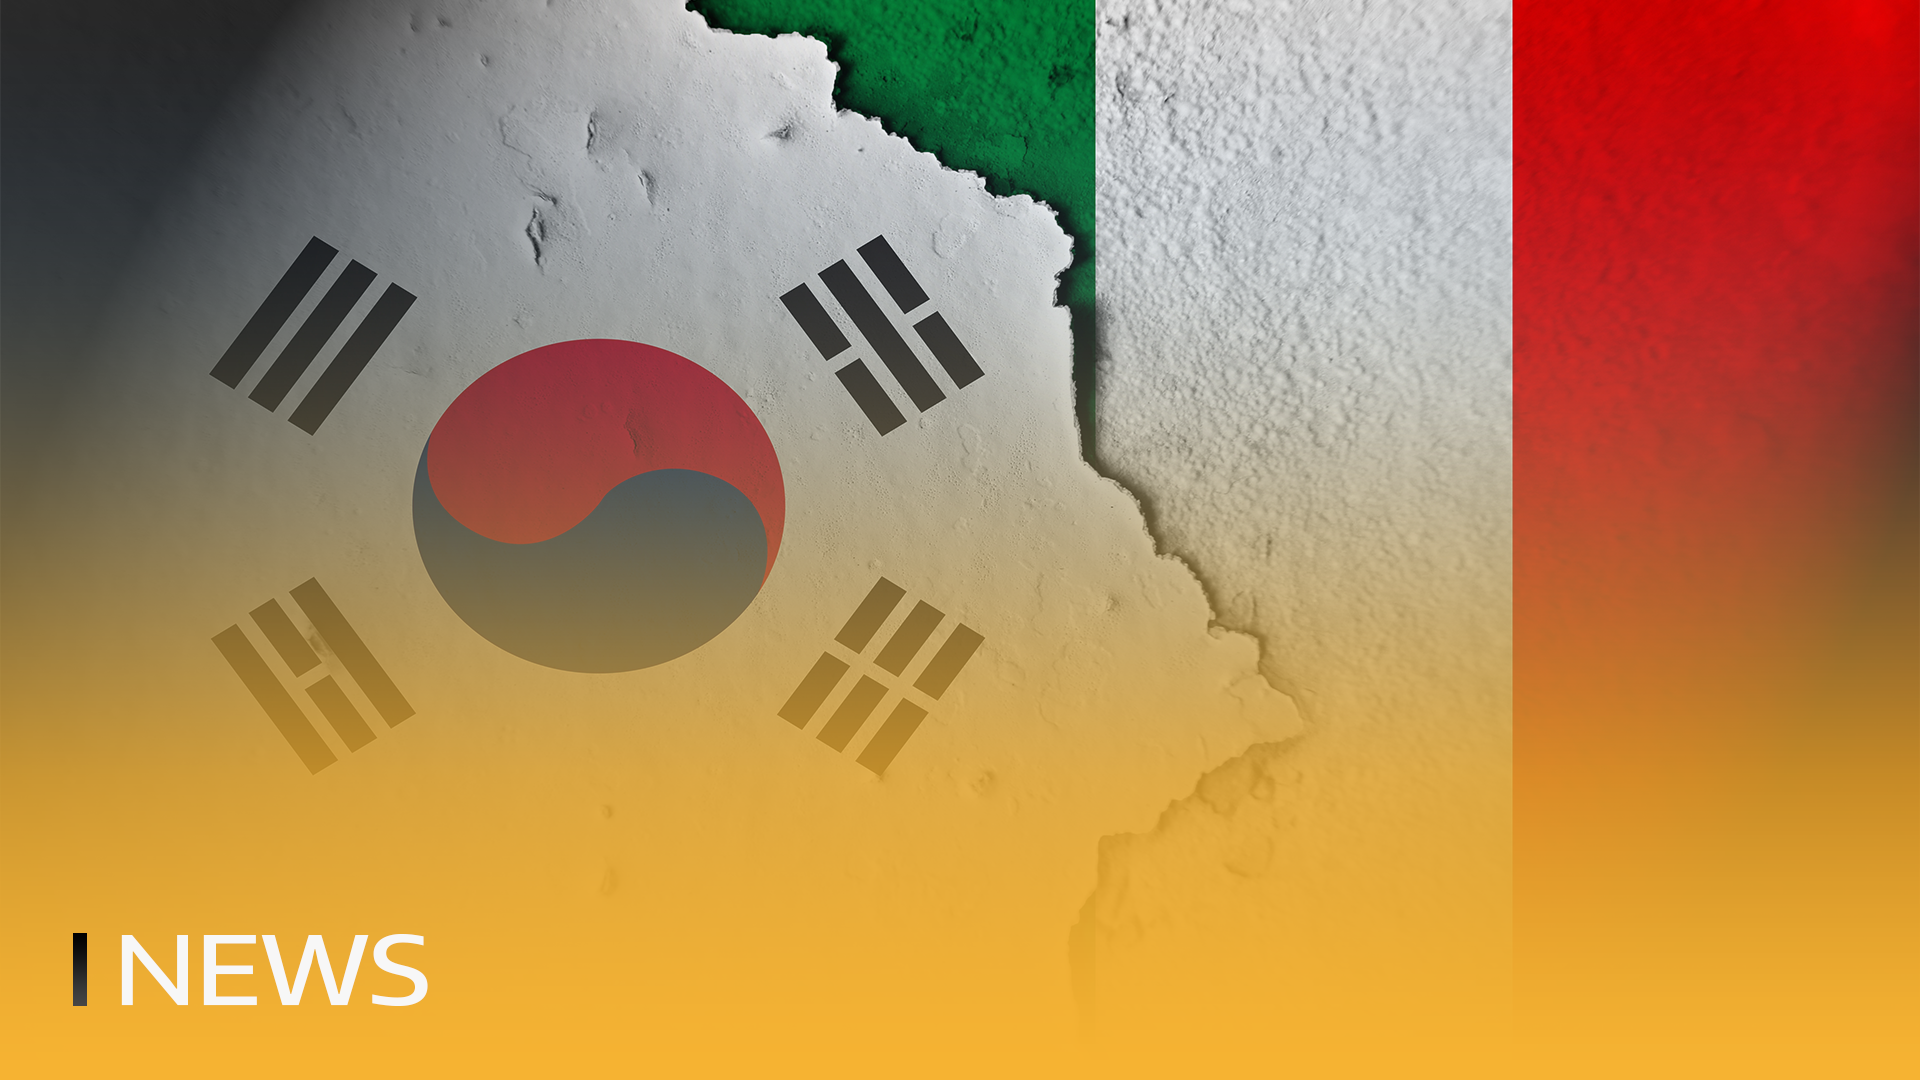 L'Italia e la Corea del Sud collaborano con il CBDC